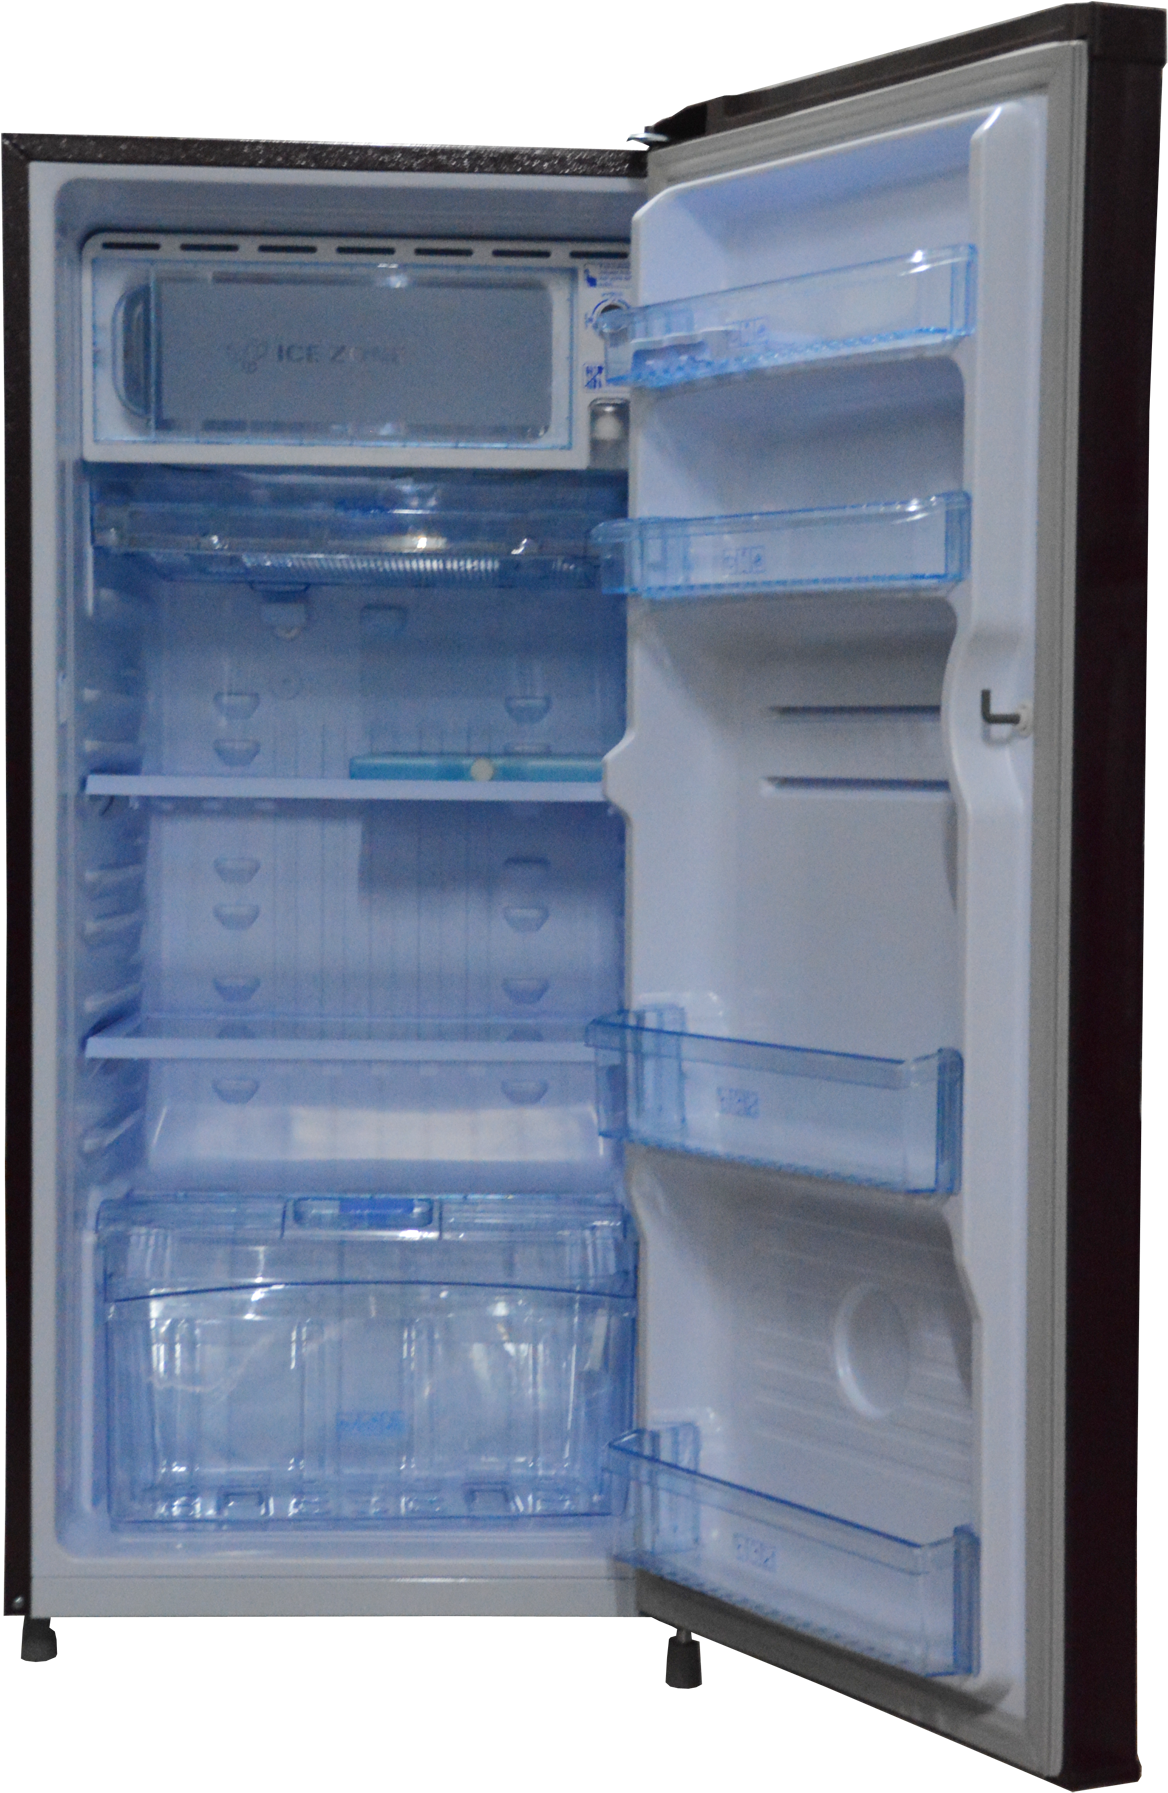 A Refrigerator With Shelves And Shelves